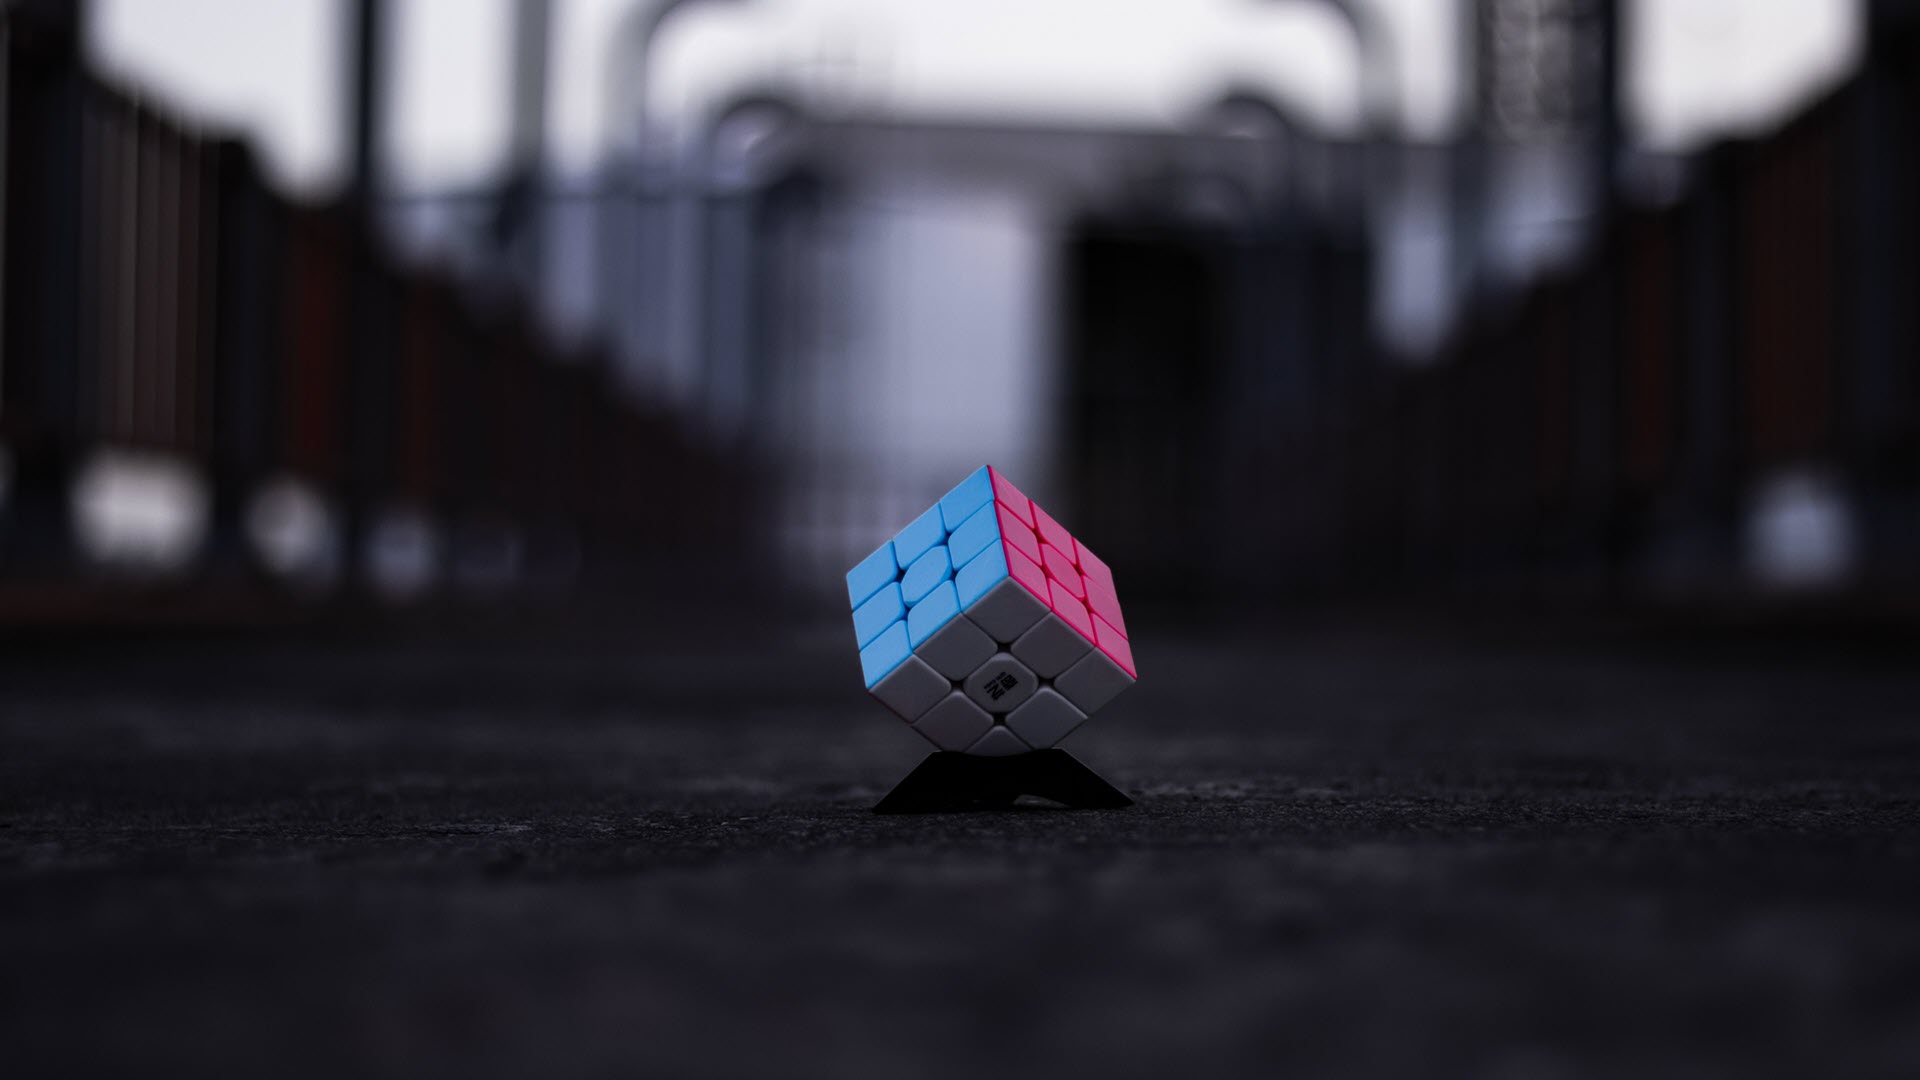 Hình Nền Khối Rubik Trên Bàn Gỗ: Hình Nền Quyến Rũ, Trên Gỗ Hình Nền, Trên Hình  Nền, Khối Rubik Hình Nền, HD và Nền Cờ đẹp trên gỗ, trên, khối rubik